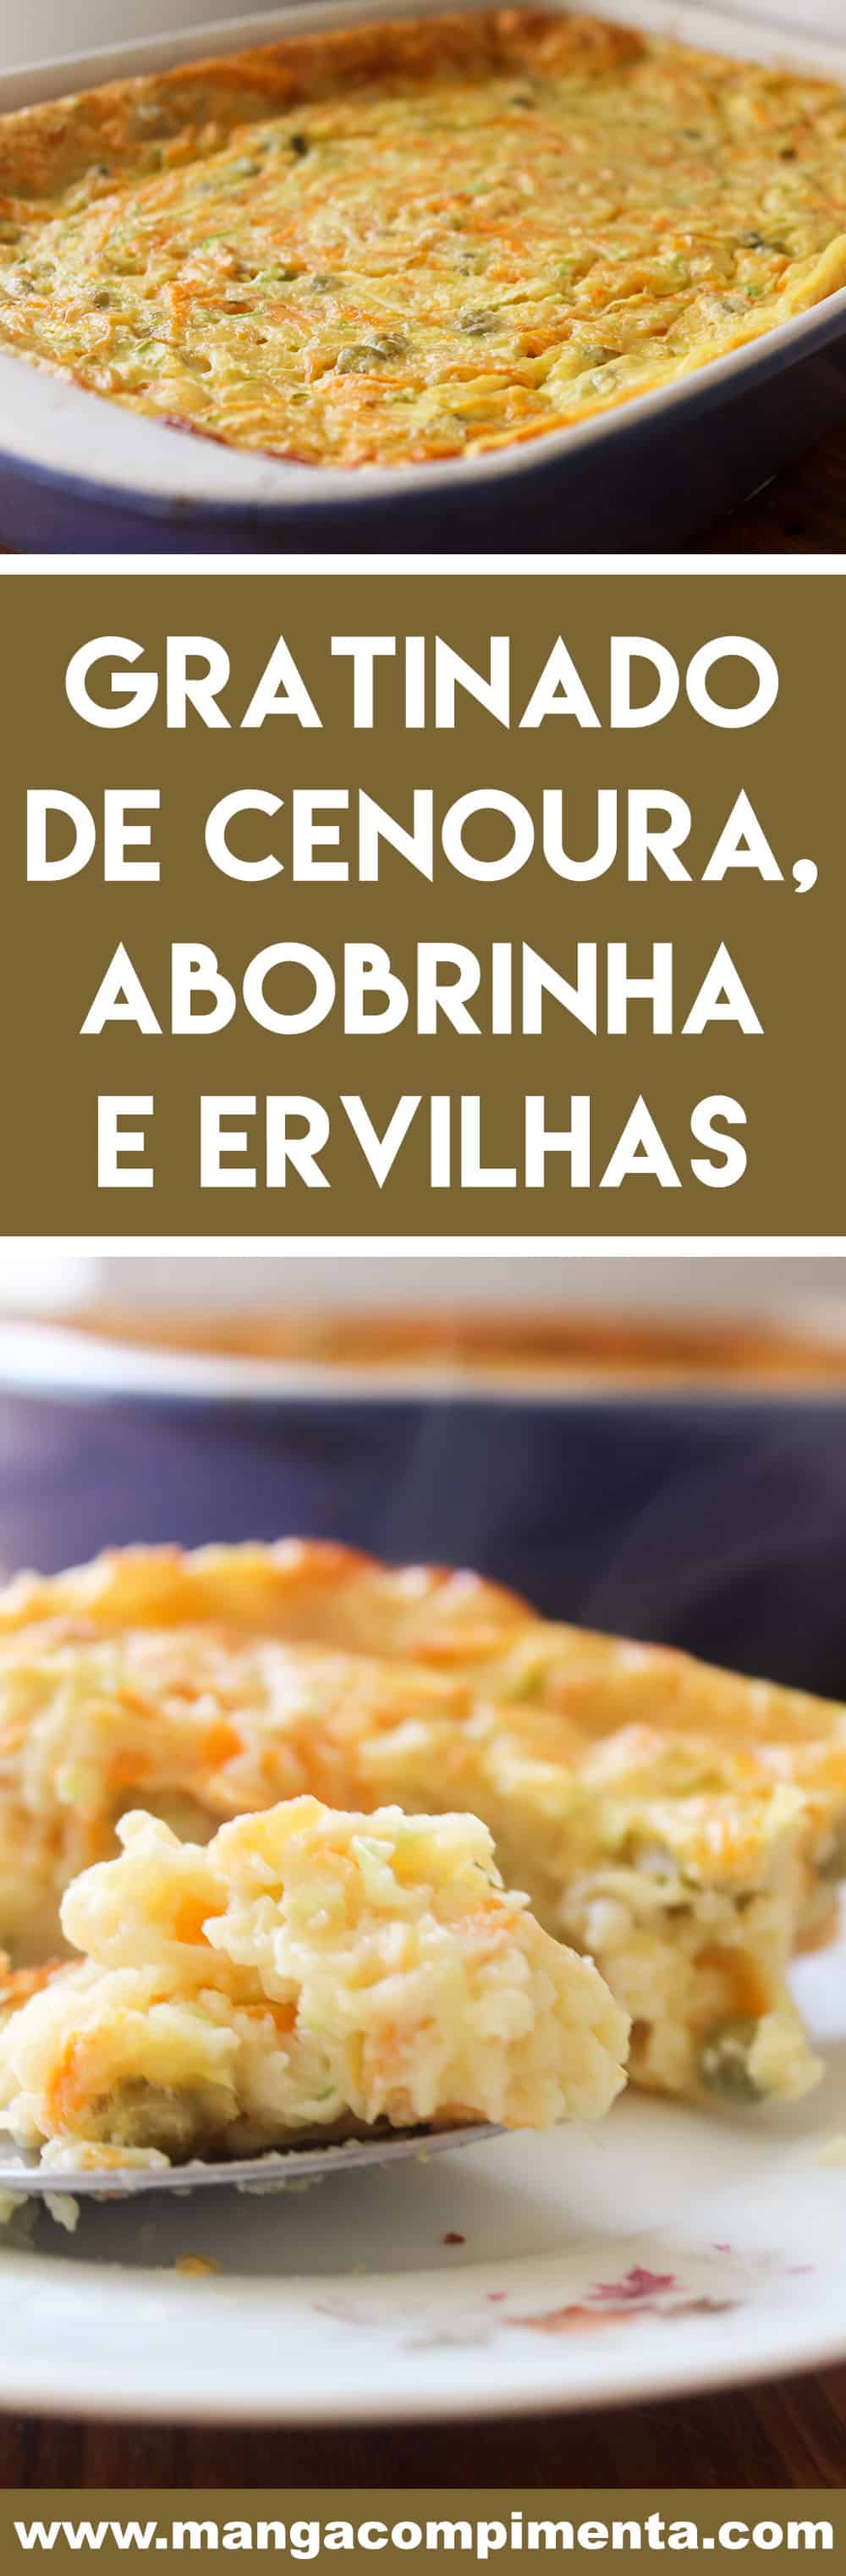 Receita de Gratinado de Abobrinha com Cenoura e Ervilhas - prepare para servir com salada e arroz na semana!